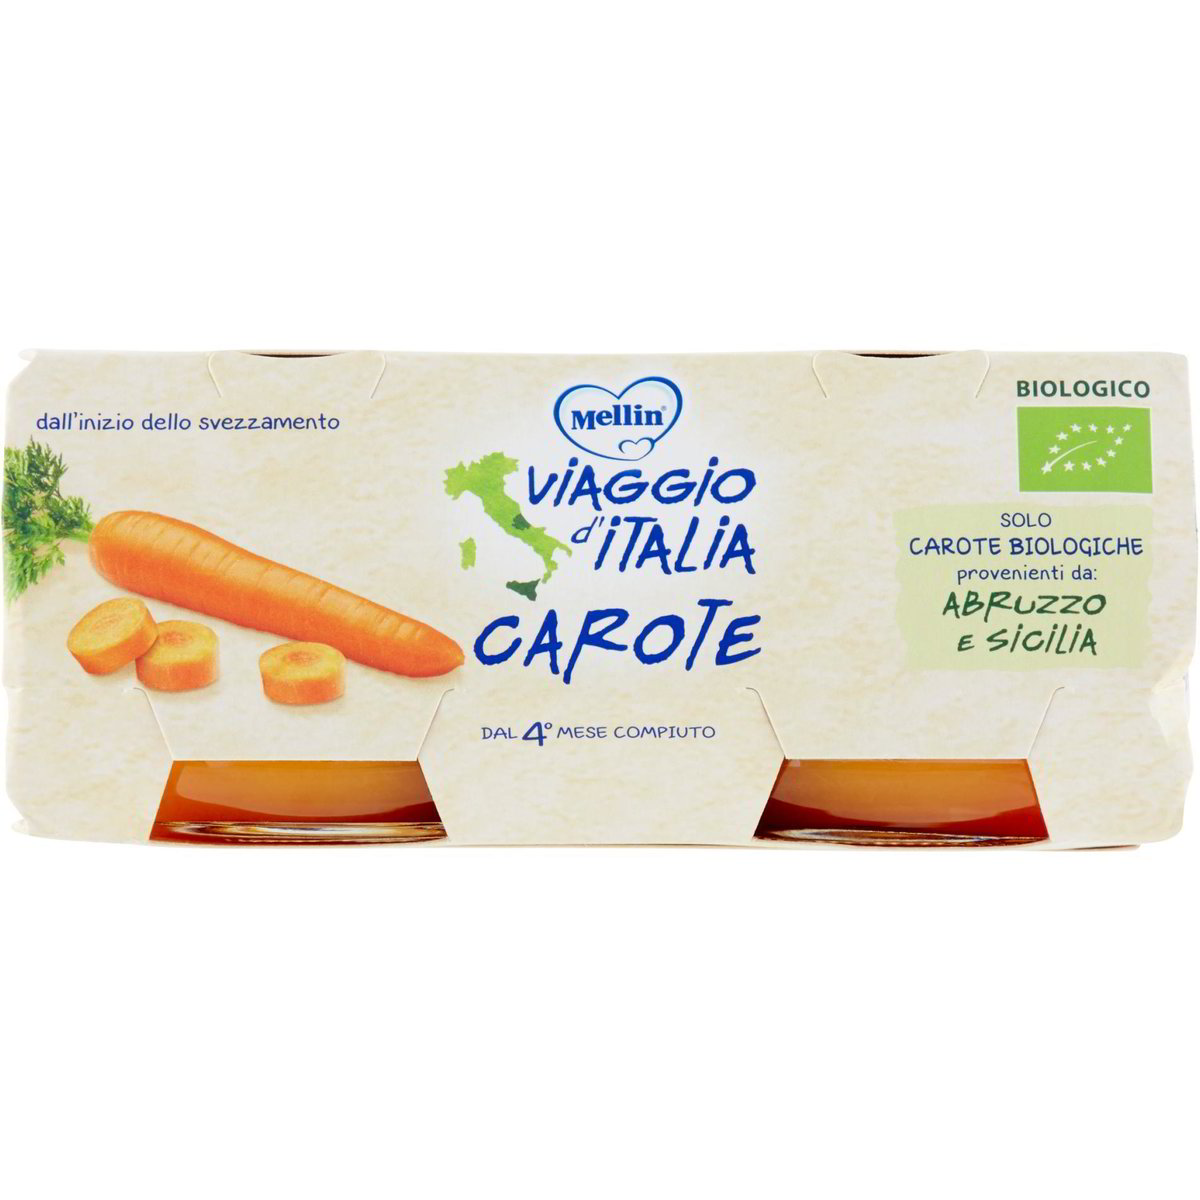 Omogeneizzato viaggio d'italia carote MELLIN 2 X 80 G - Coop Shop